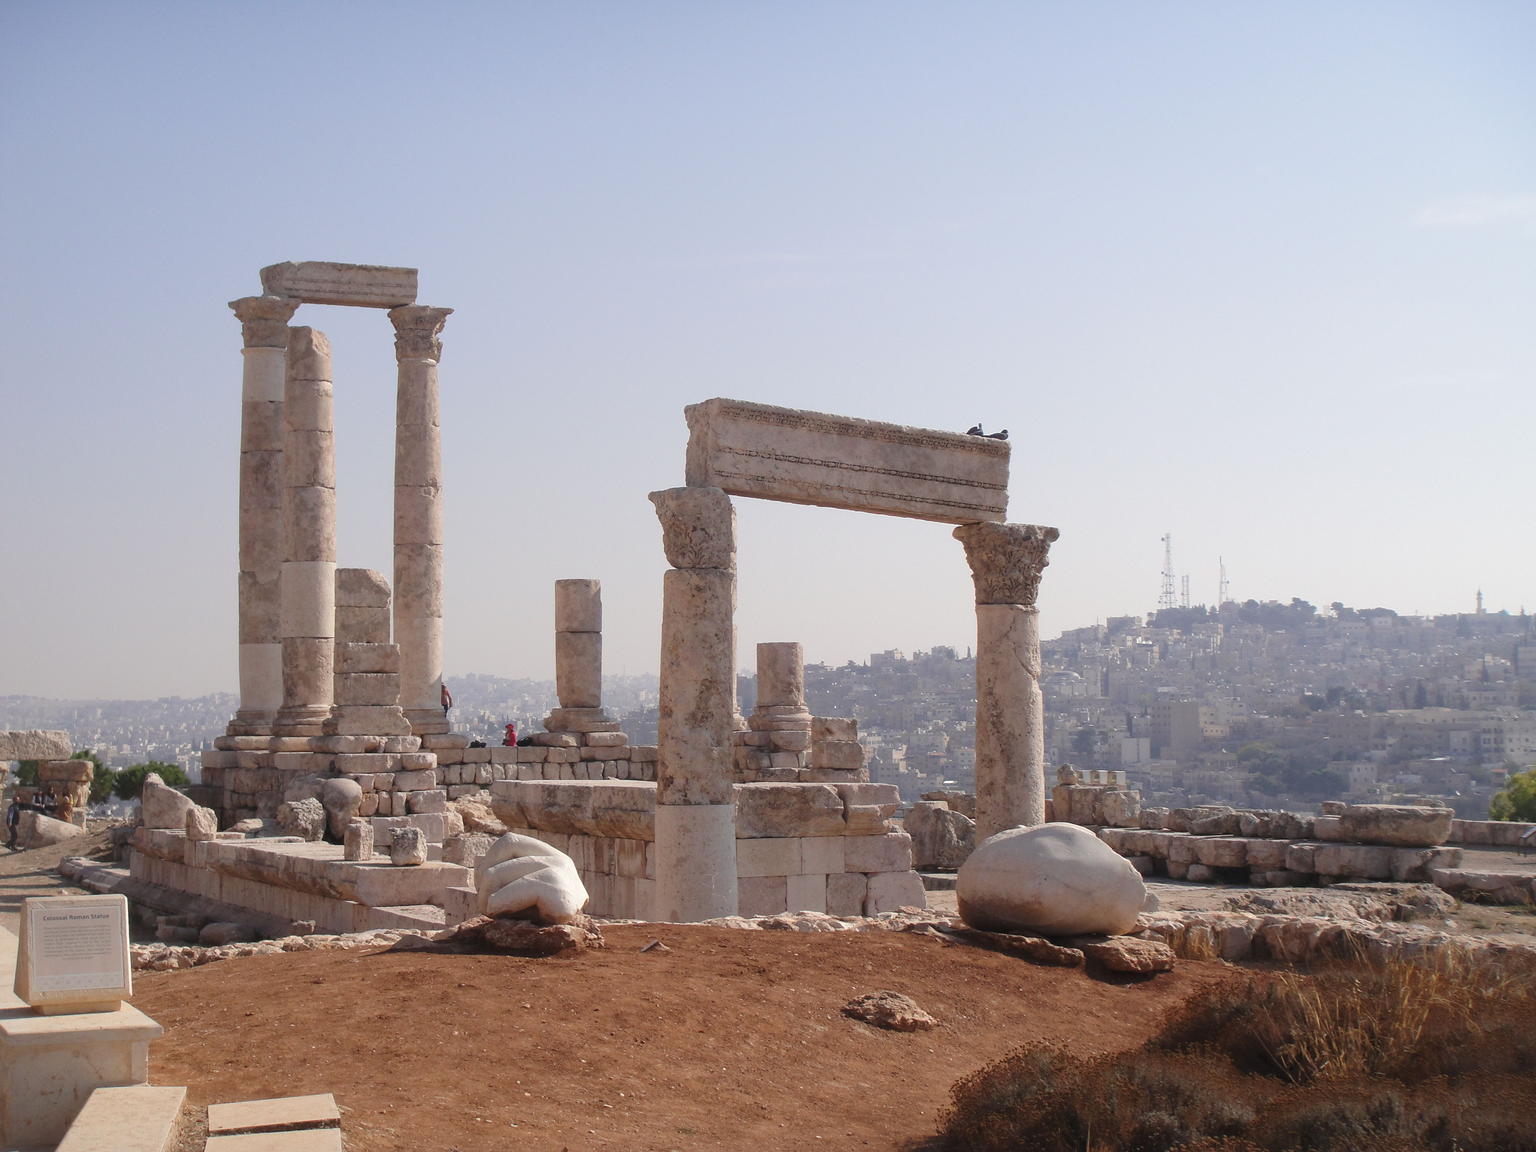 Amman Citadel ruins - Roman Temple of Hercules at the Amman Citadel (Jabal Al-Qalaa)